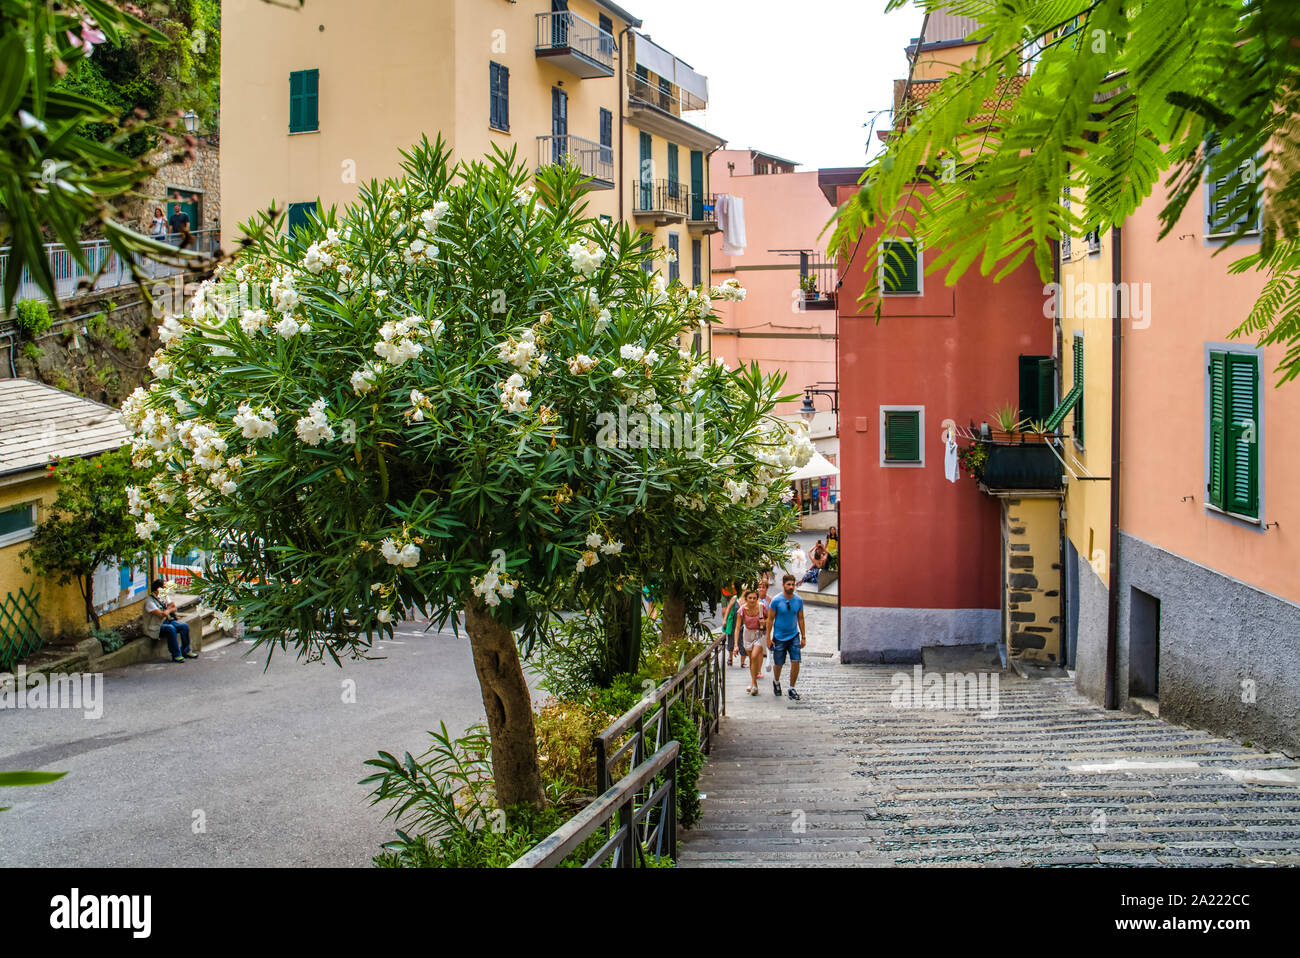 Riomaggiore Cinque Terre, Italia - Agosto 17, 2019: città strade strette con case colorate, una località di villeggiatura in Europa sulla riva del Mar Ligure Foto Stock